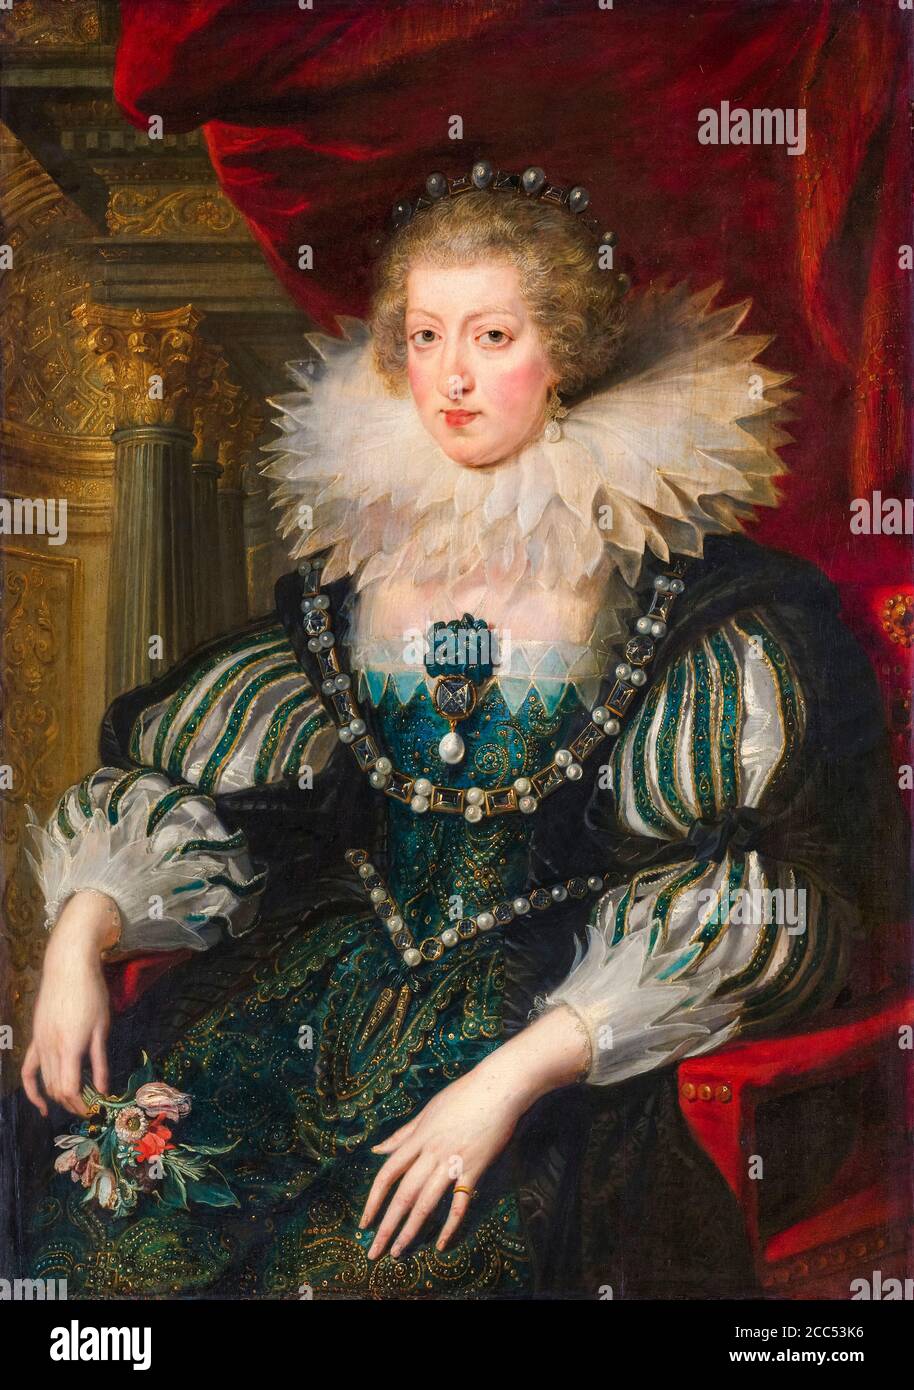 Anne d'Autriche (1601-1666), reine de France, épouse de Louis XIII, roi de France, portrait peint par Workshop de Peter Paul Rubens, 1625-1626 Banque D'Images